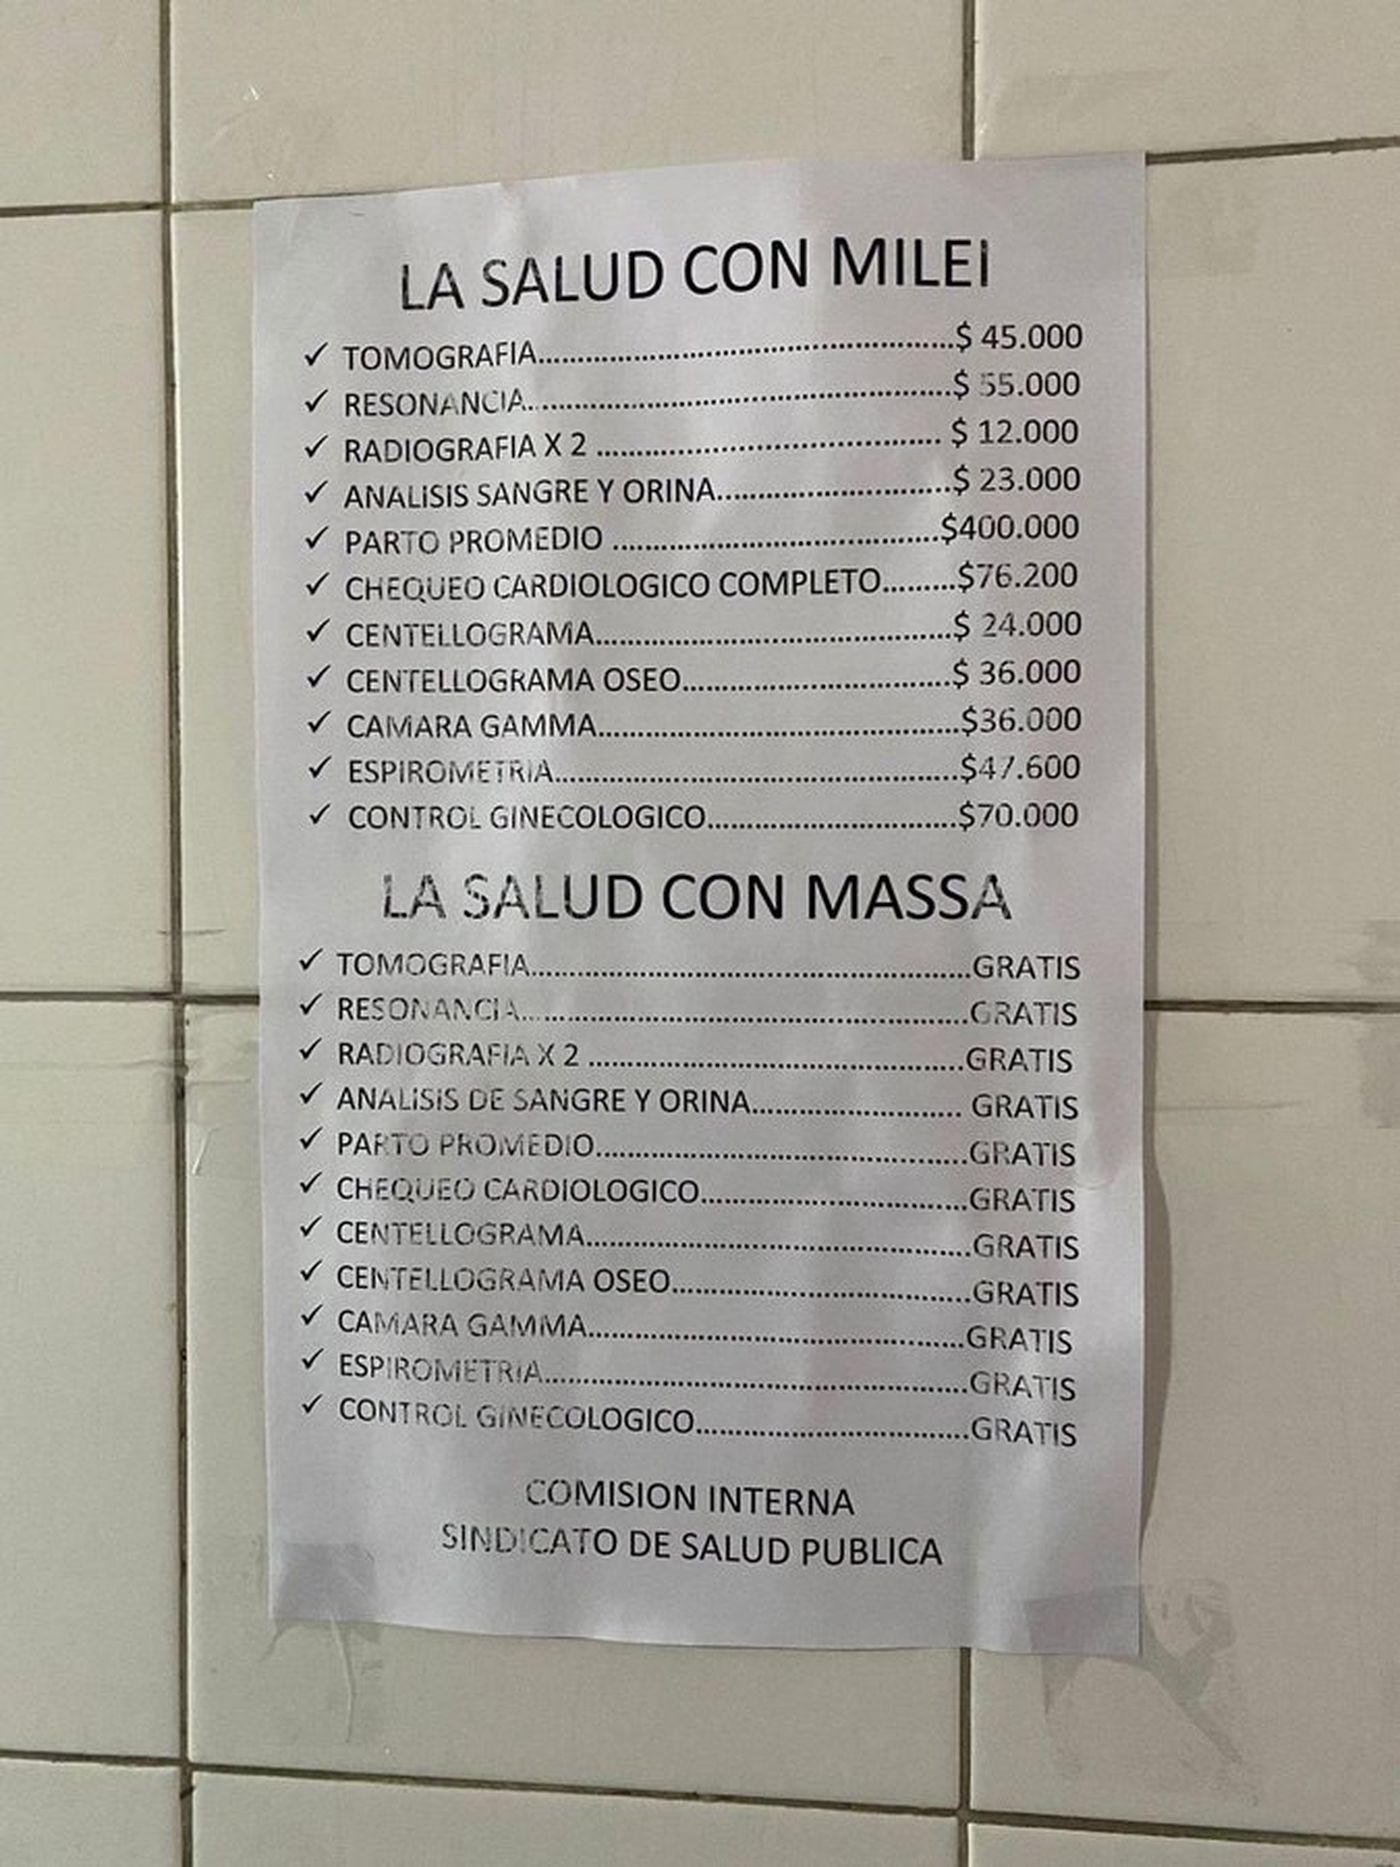 Los afiches fueron colocados por la Comisión interna del Sindicato de Salud Pública del Hospital San Martín de La Plata.